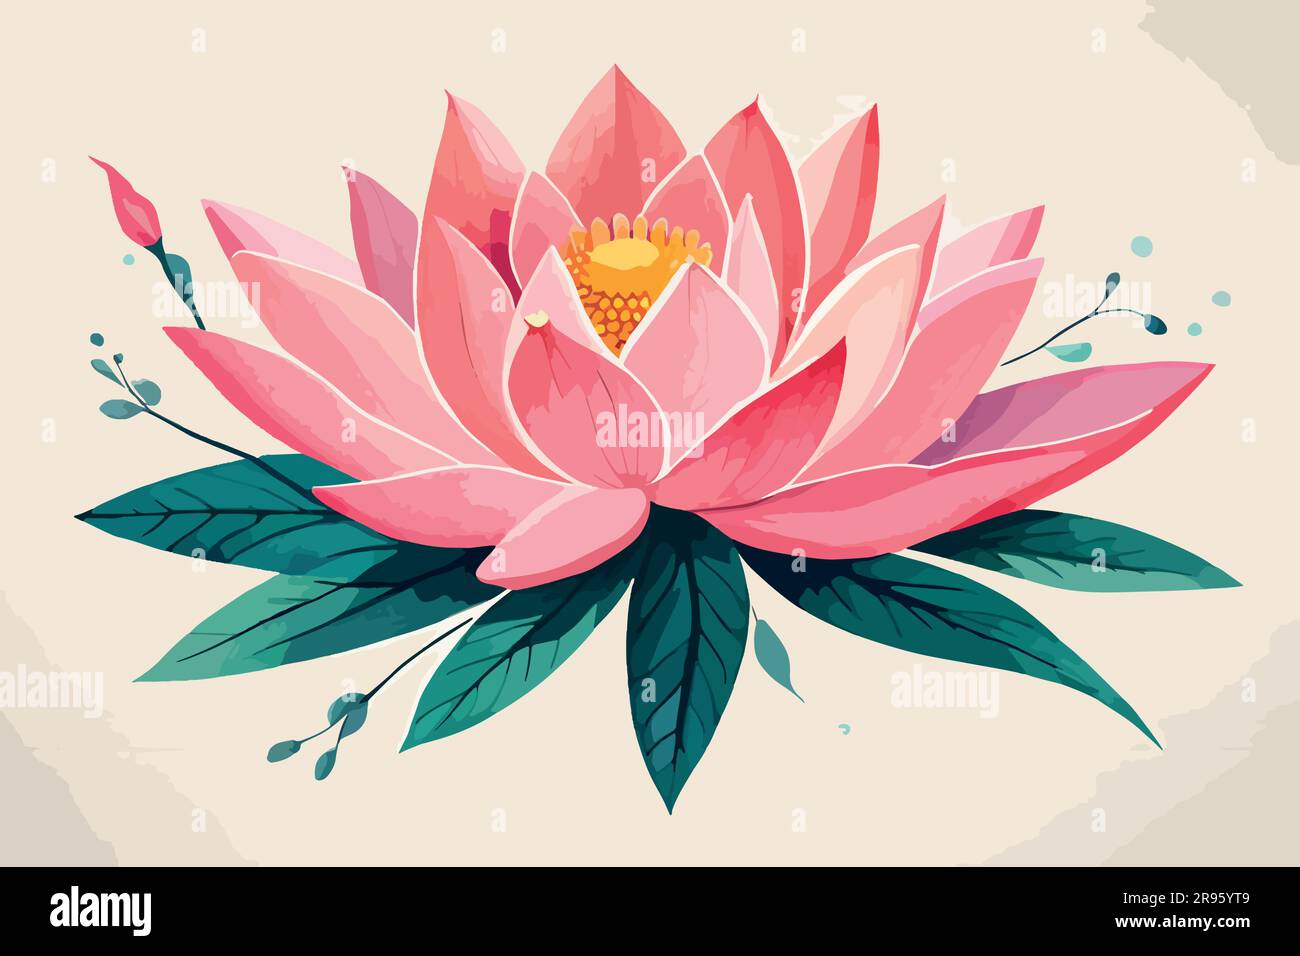 Lotus flower art Banque de photographies et d'images à haute résolution -  Page 3 - Alamy